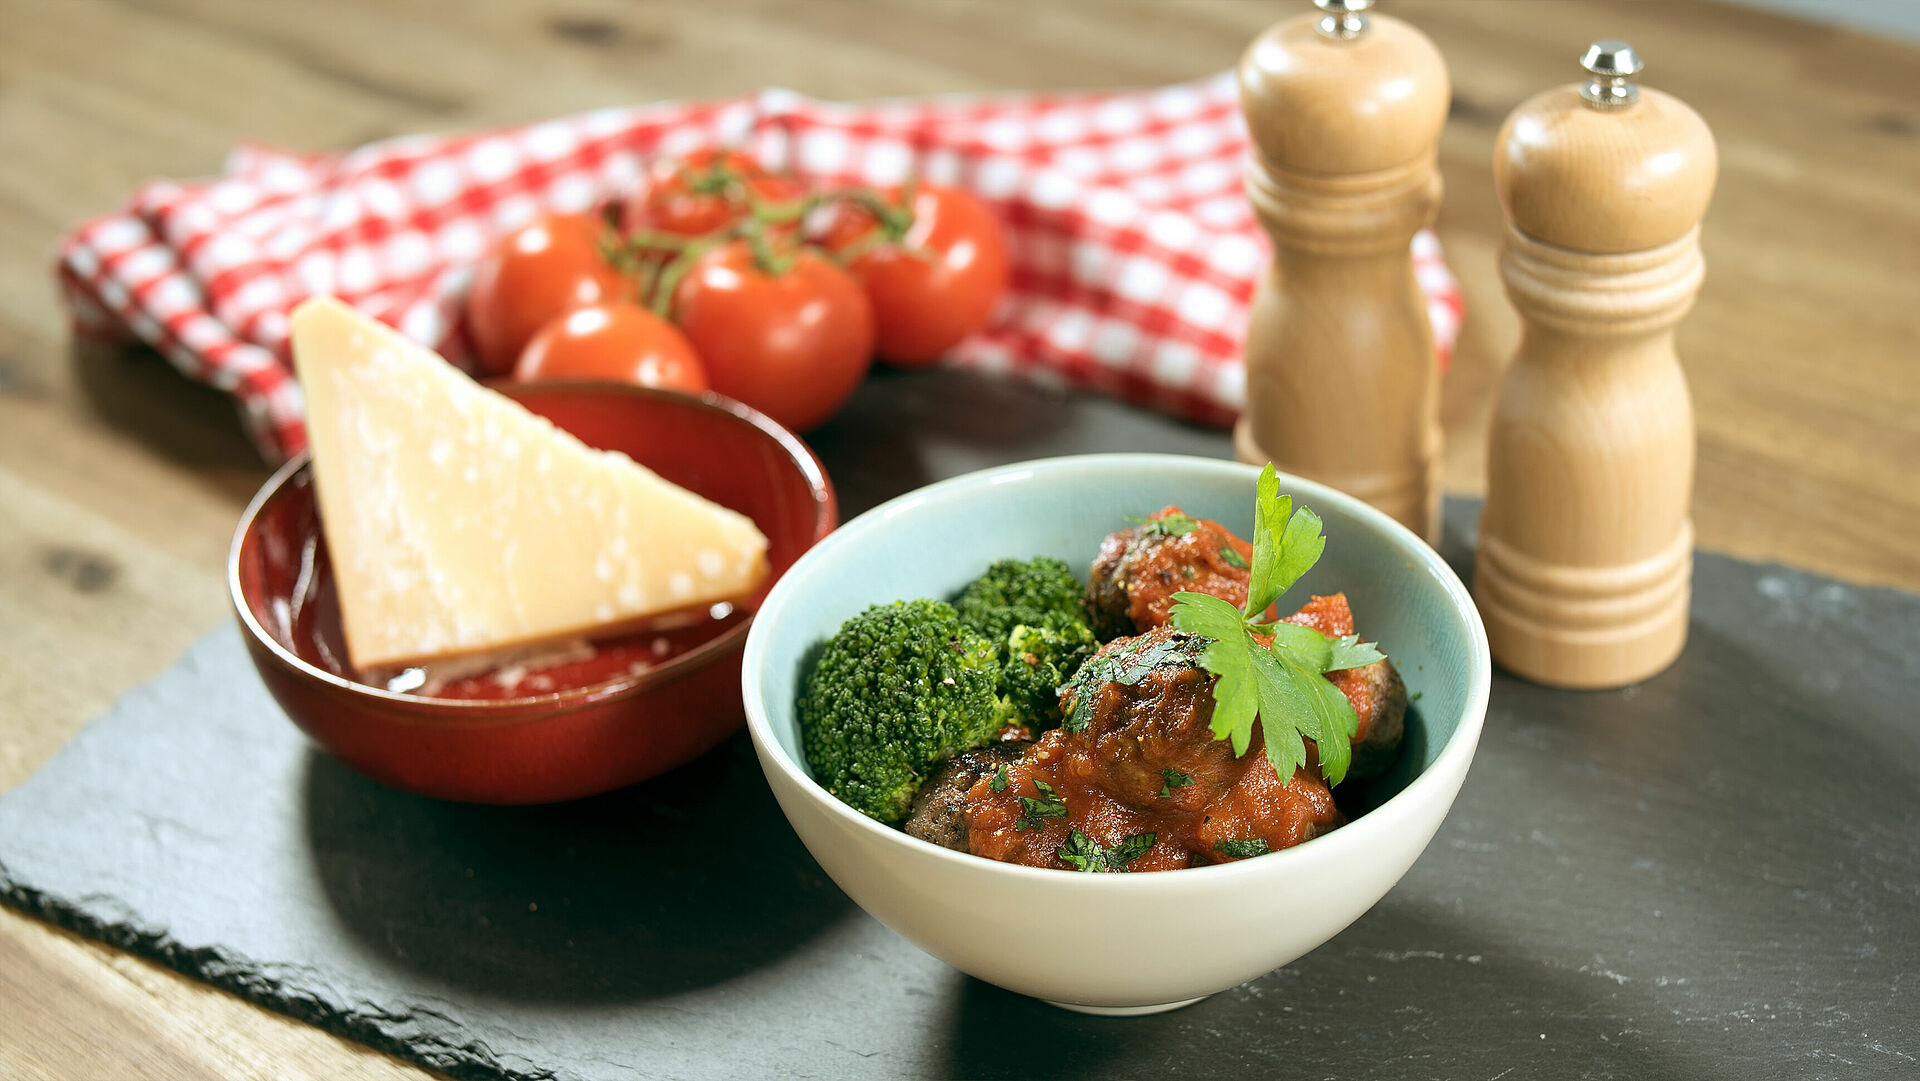 Eine Schüssel mit Salami-Fleischbällchen in Tomatensugo mit Brokkoli, daneben eine Schüssel mit einem Stück Parmesan